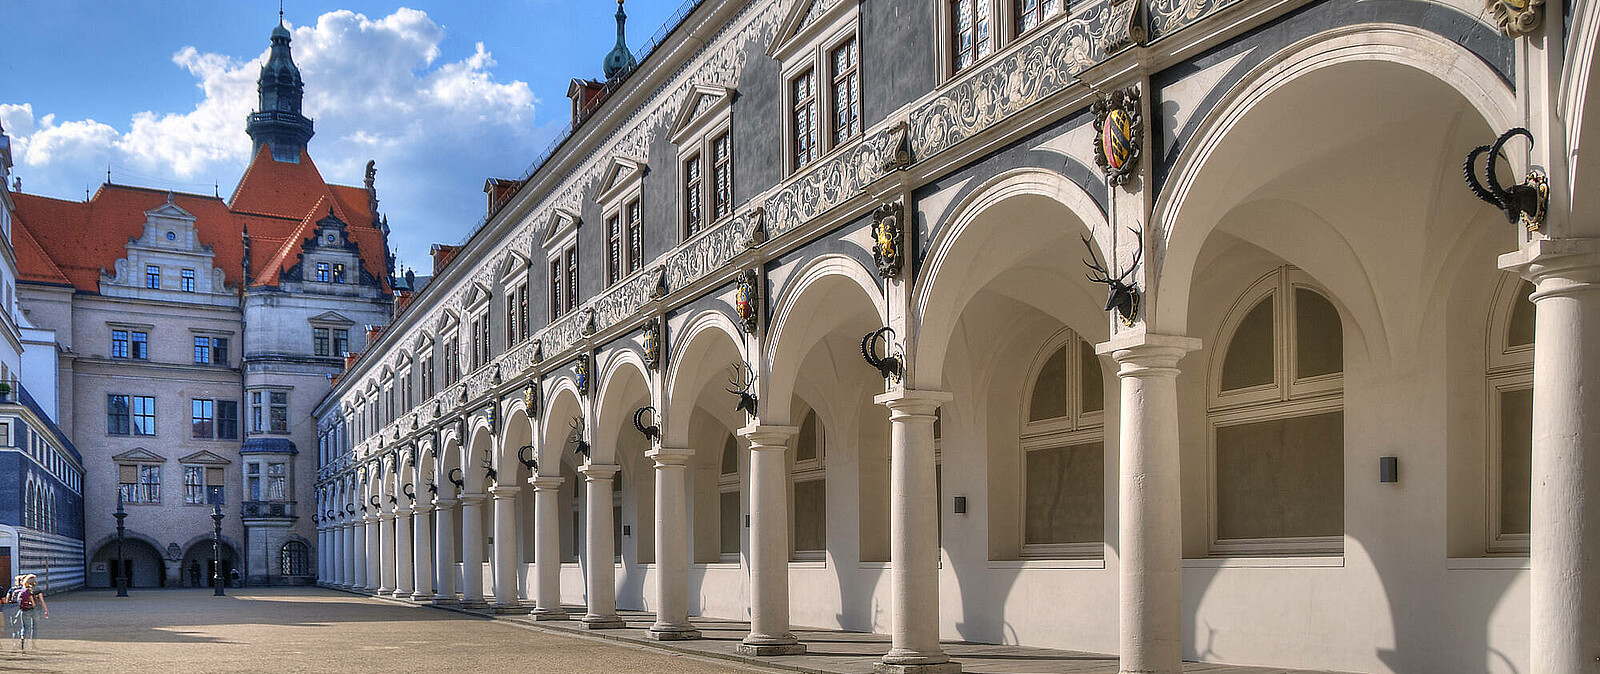 Der Stallhof gehört mit zum Ensemble des neu aufgebauten Residenzschlosses Dresden. Hier finden die Besucher auch das Historische Grüne Gewölbe inmitten der Dresdner Altstadt. All diese Sehenswürdigkeiten und noch einige versteckte Highlights mehr ler